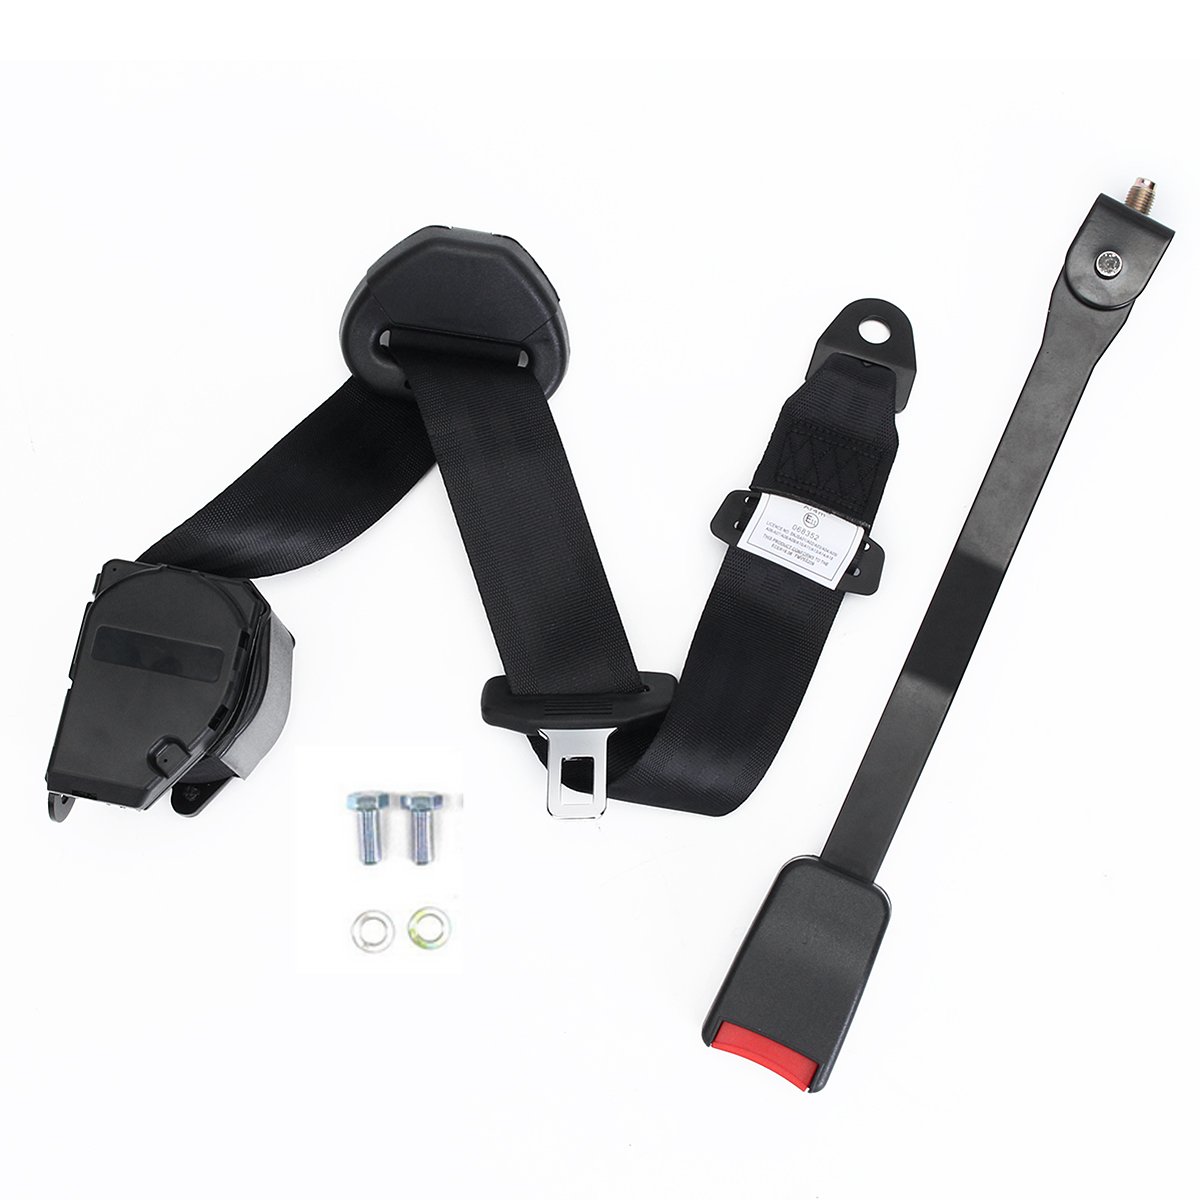 

Universal 3 Point Retractable Auto Car Seat Belt Lap Shoulder Adjustable Harness